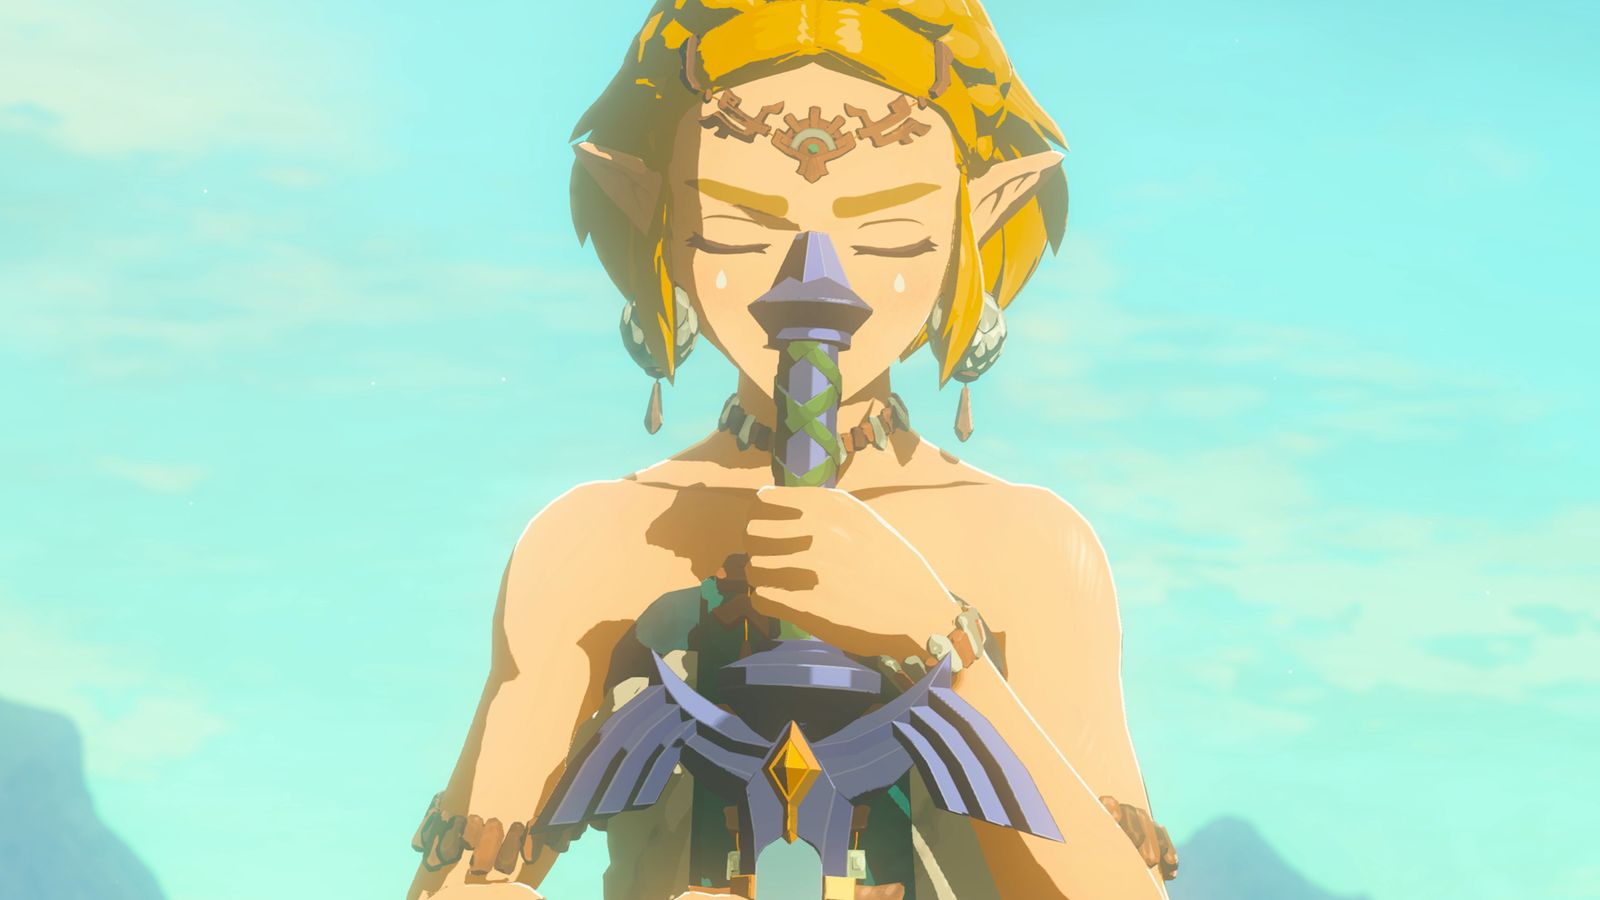 Image of Zelda in The Legend of Zelda: Tears of the Kingdom holding a sword downwards.